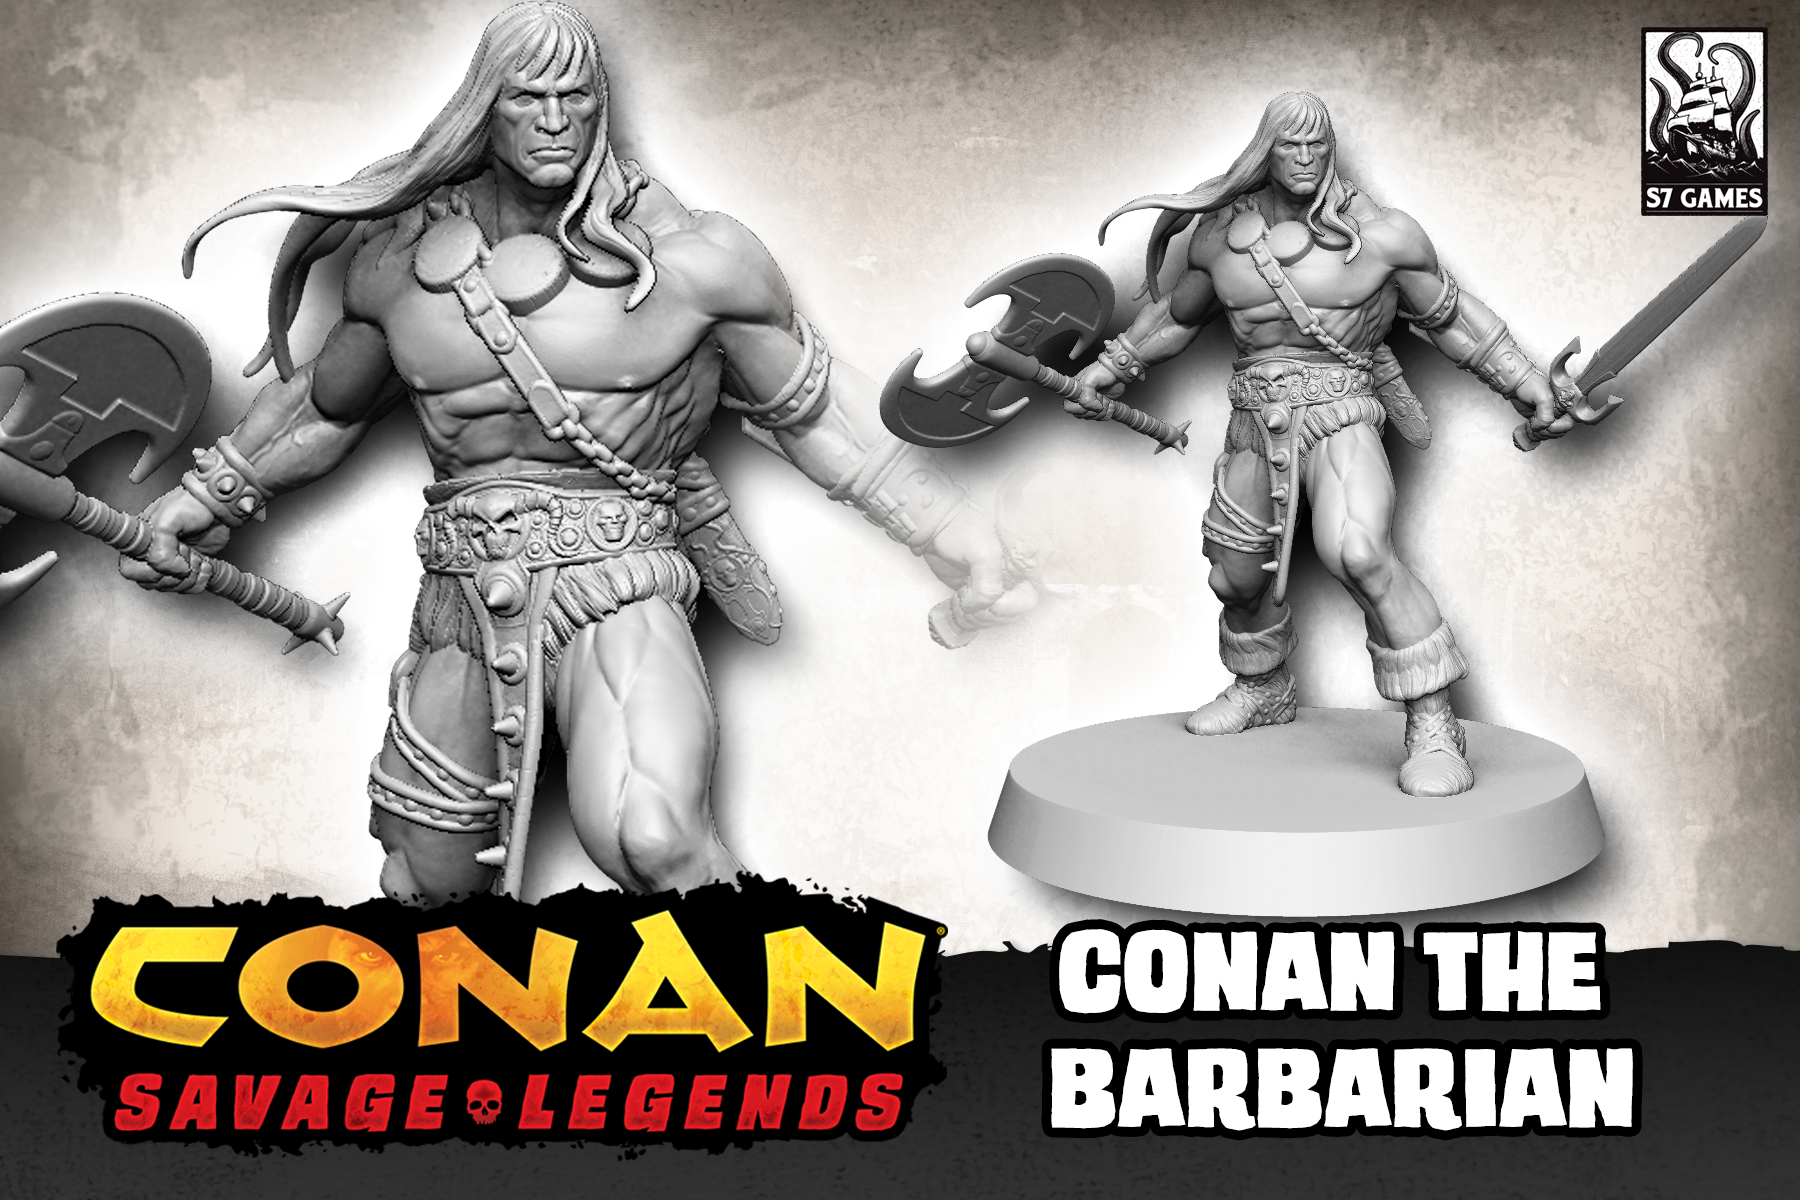 Конан 7. Savage Conan. Conan Board game. Conan Barbarian настольная игра. Карта Саваж Конан.